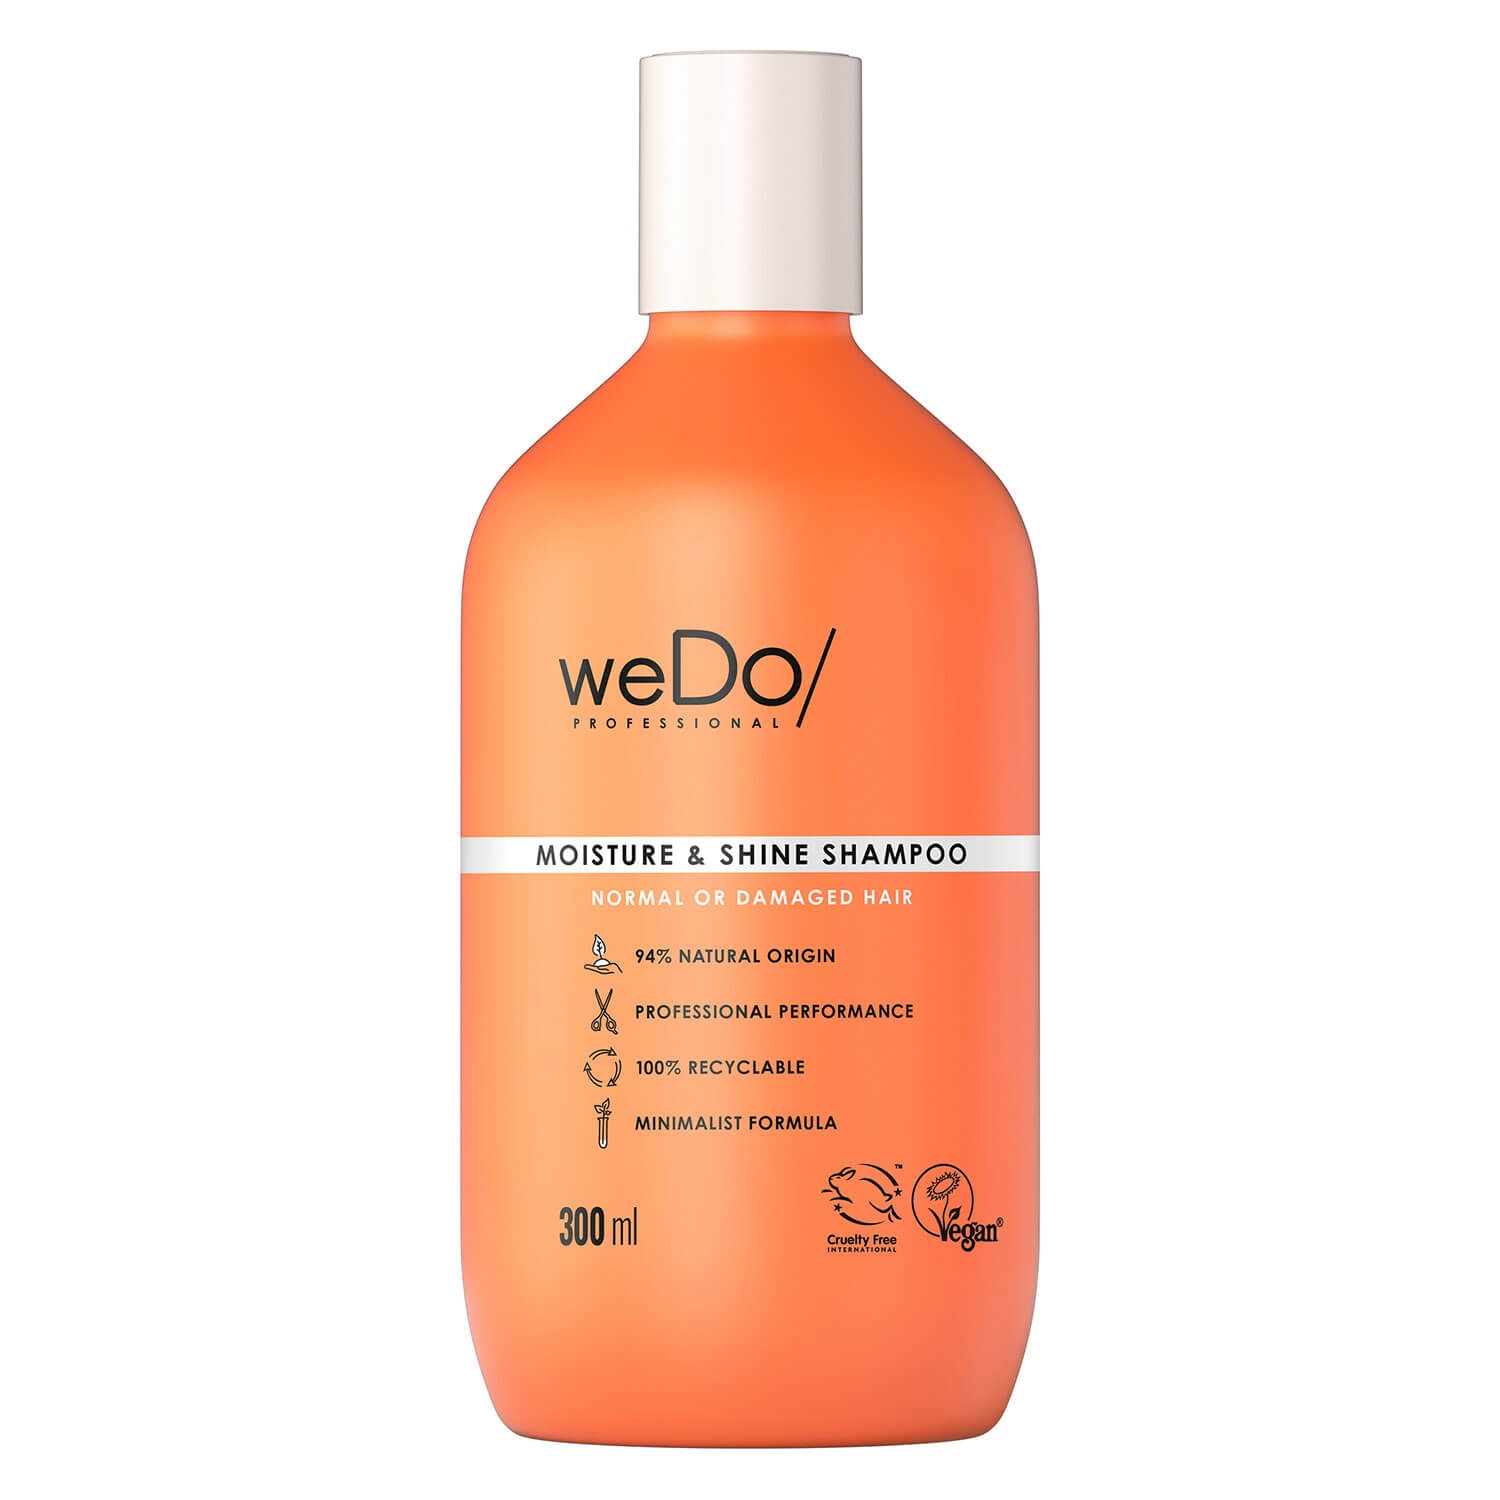 Product image from weDo/ - Moisture & Shine Shampoo